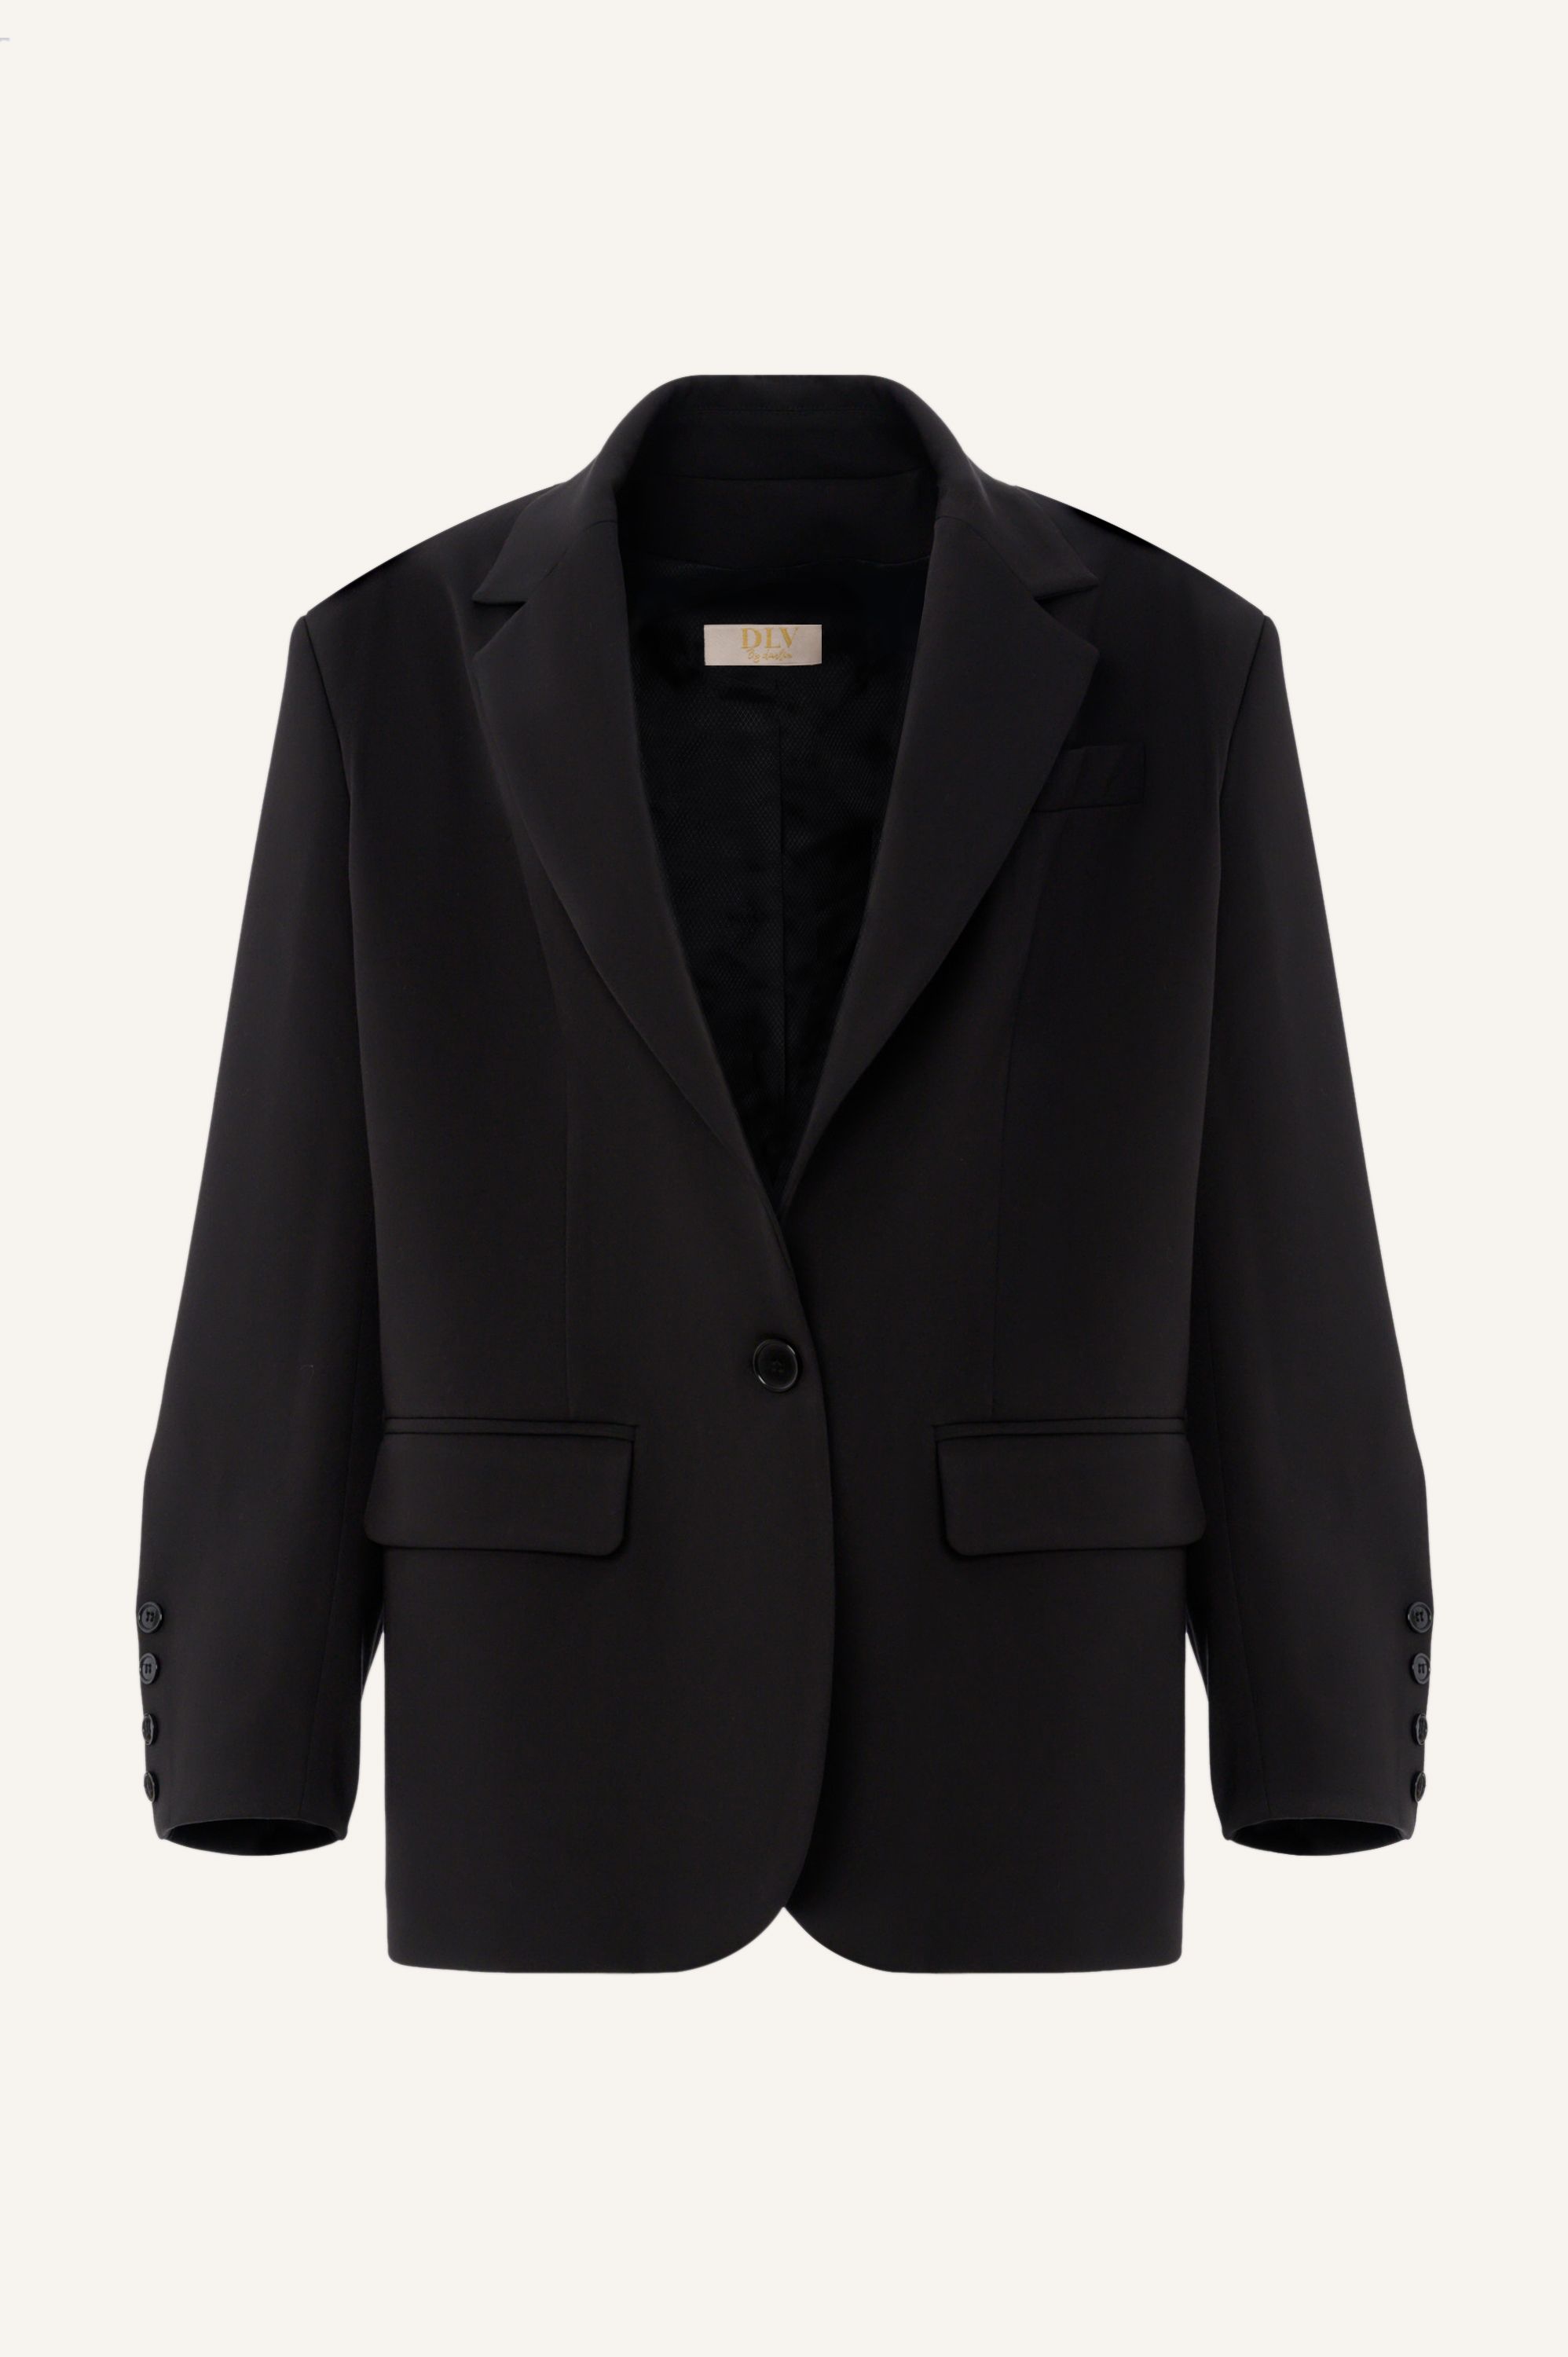 μαύρο σακάκι φαρδύ,oversized blazer black color